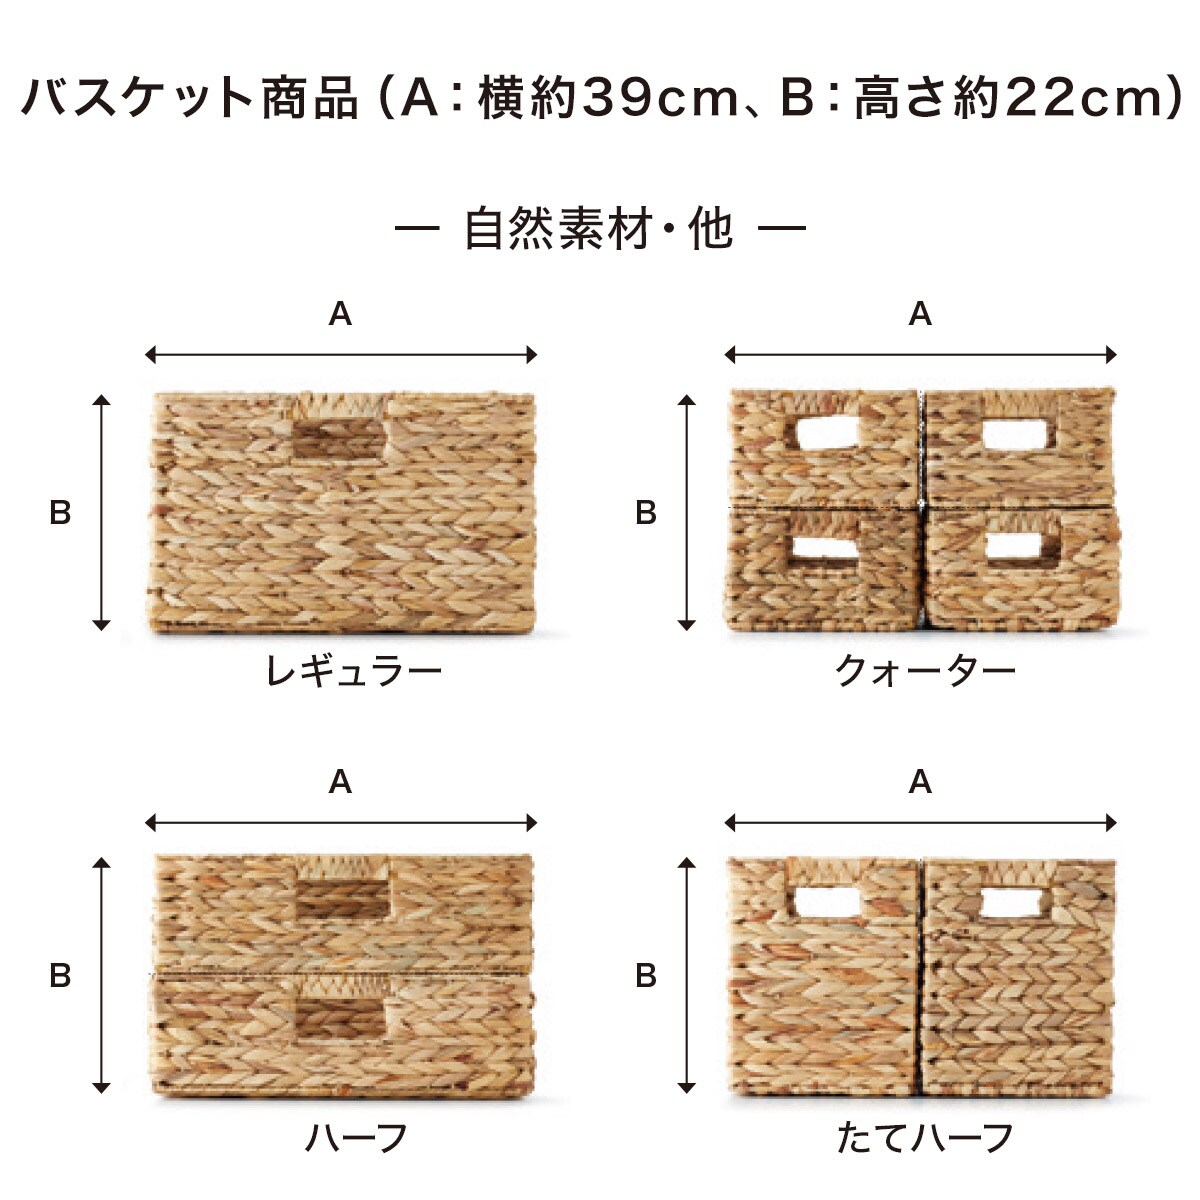  basket lyra 3.. type half (GY) storage case storage box nitoli